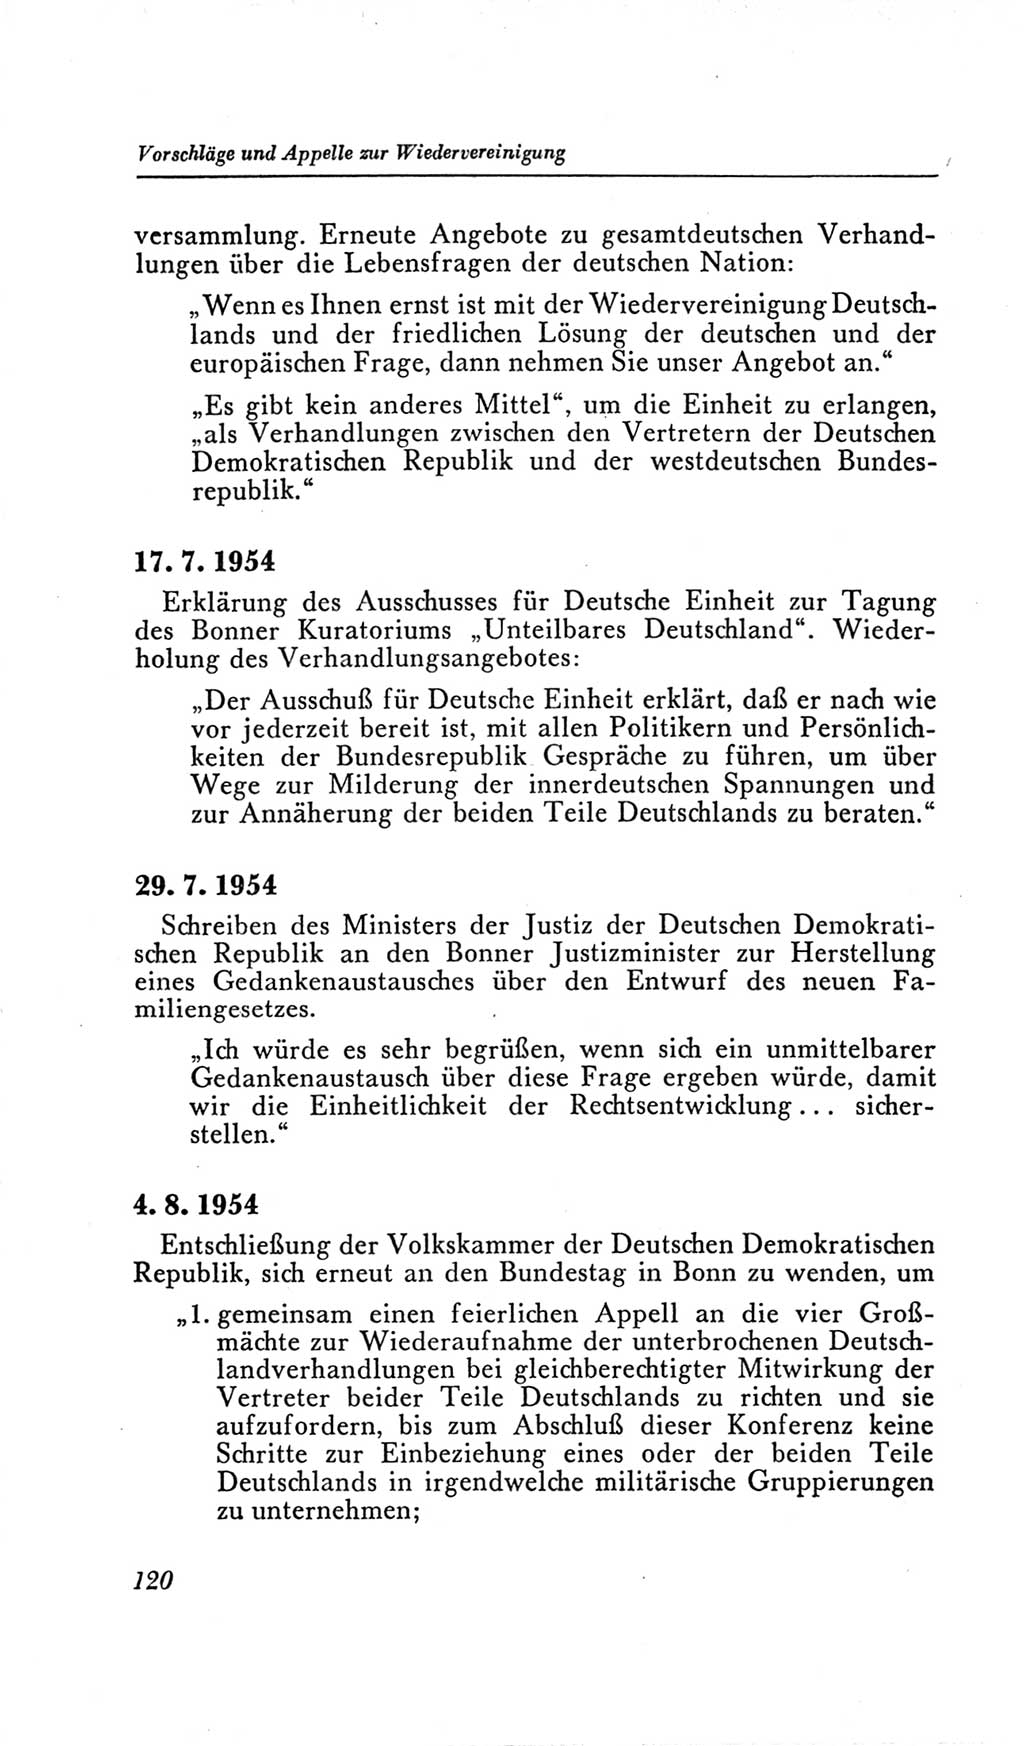 Handbuch der Volkskammer (VK) der Deutschen Demokratischen Republik (DDR), 2. Wahlperiode 1954-1958, Seite 120 (Hdb. VK. DDR, 2. WP. 1954-1958, S. 120)